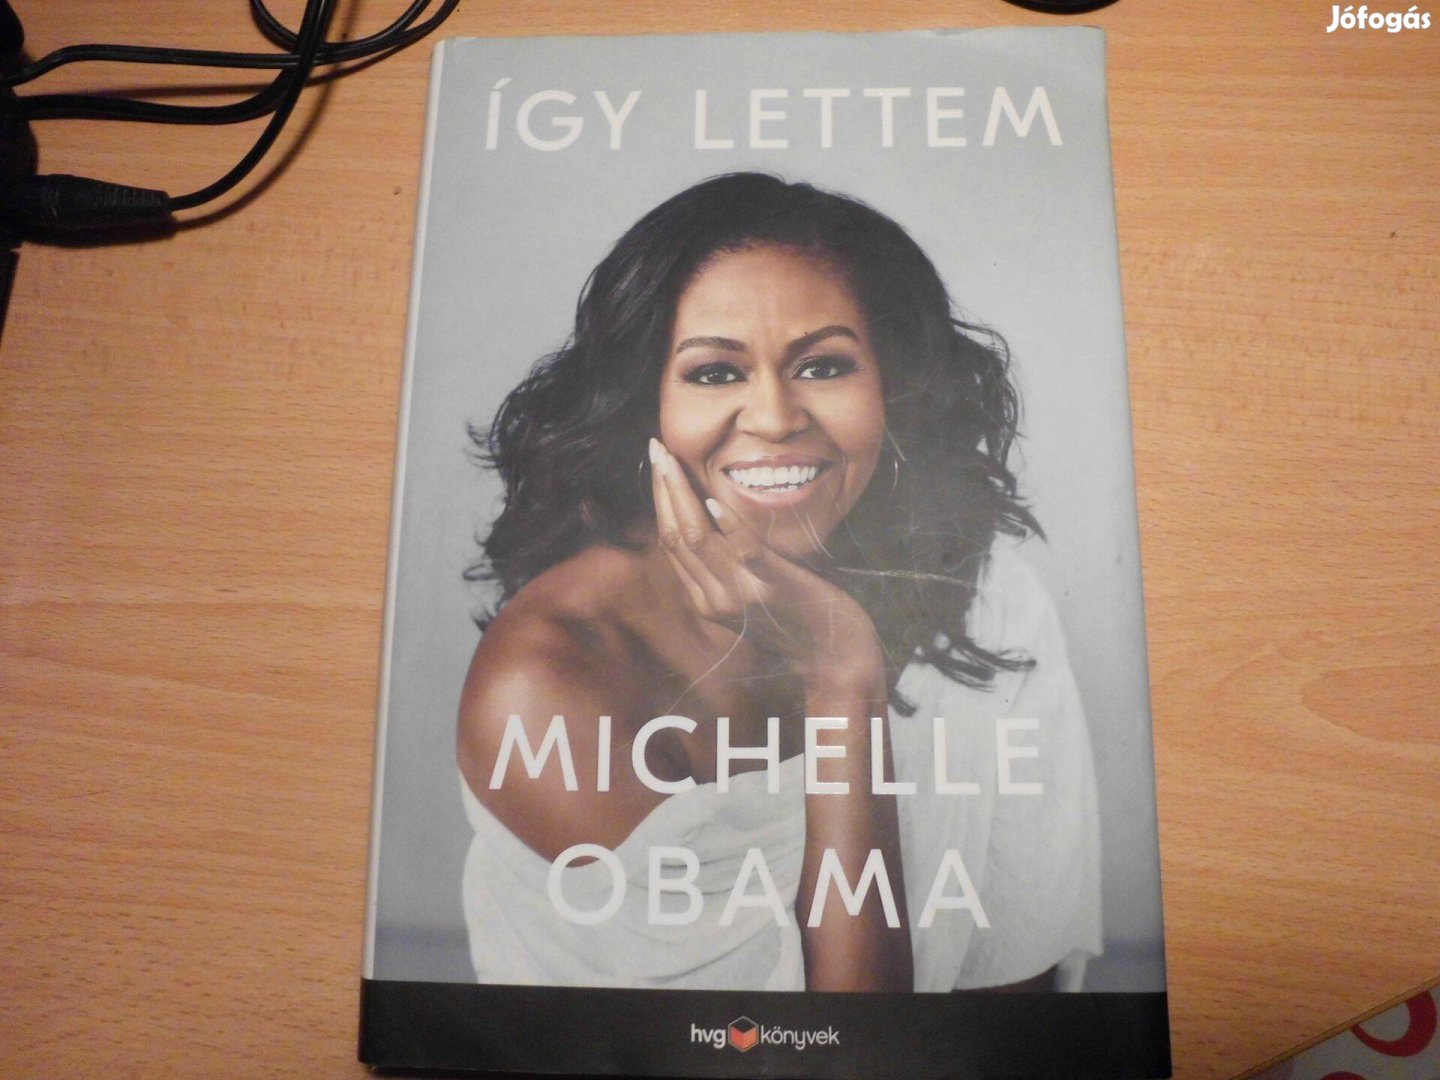 Michelle Obama: Így lettem - könyv eladó!